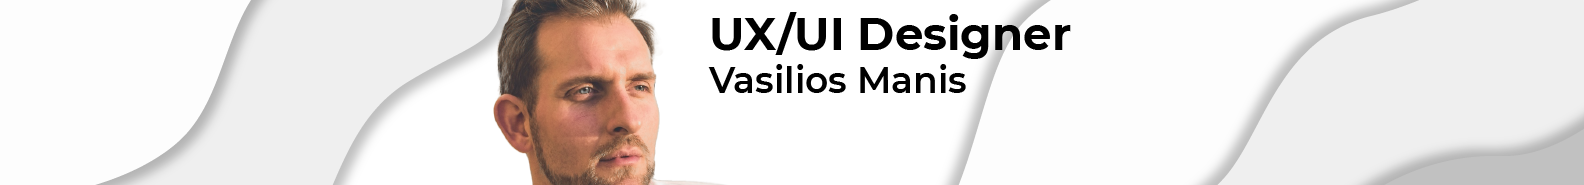 Vasilios Manis's profile banner